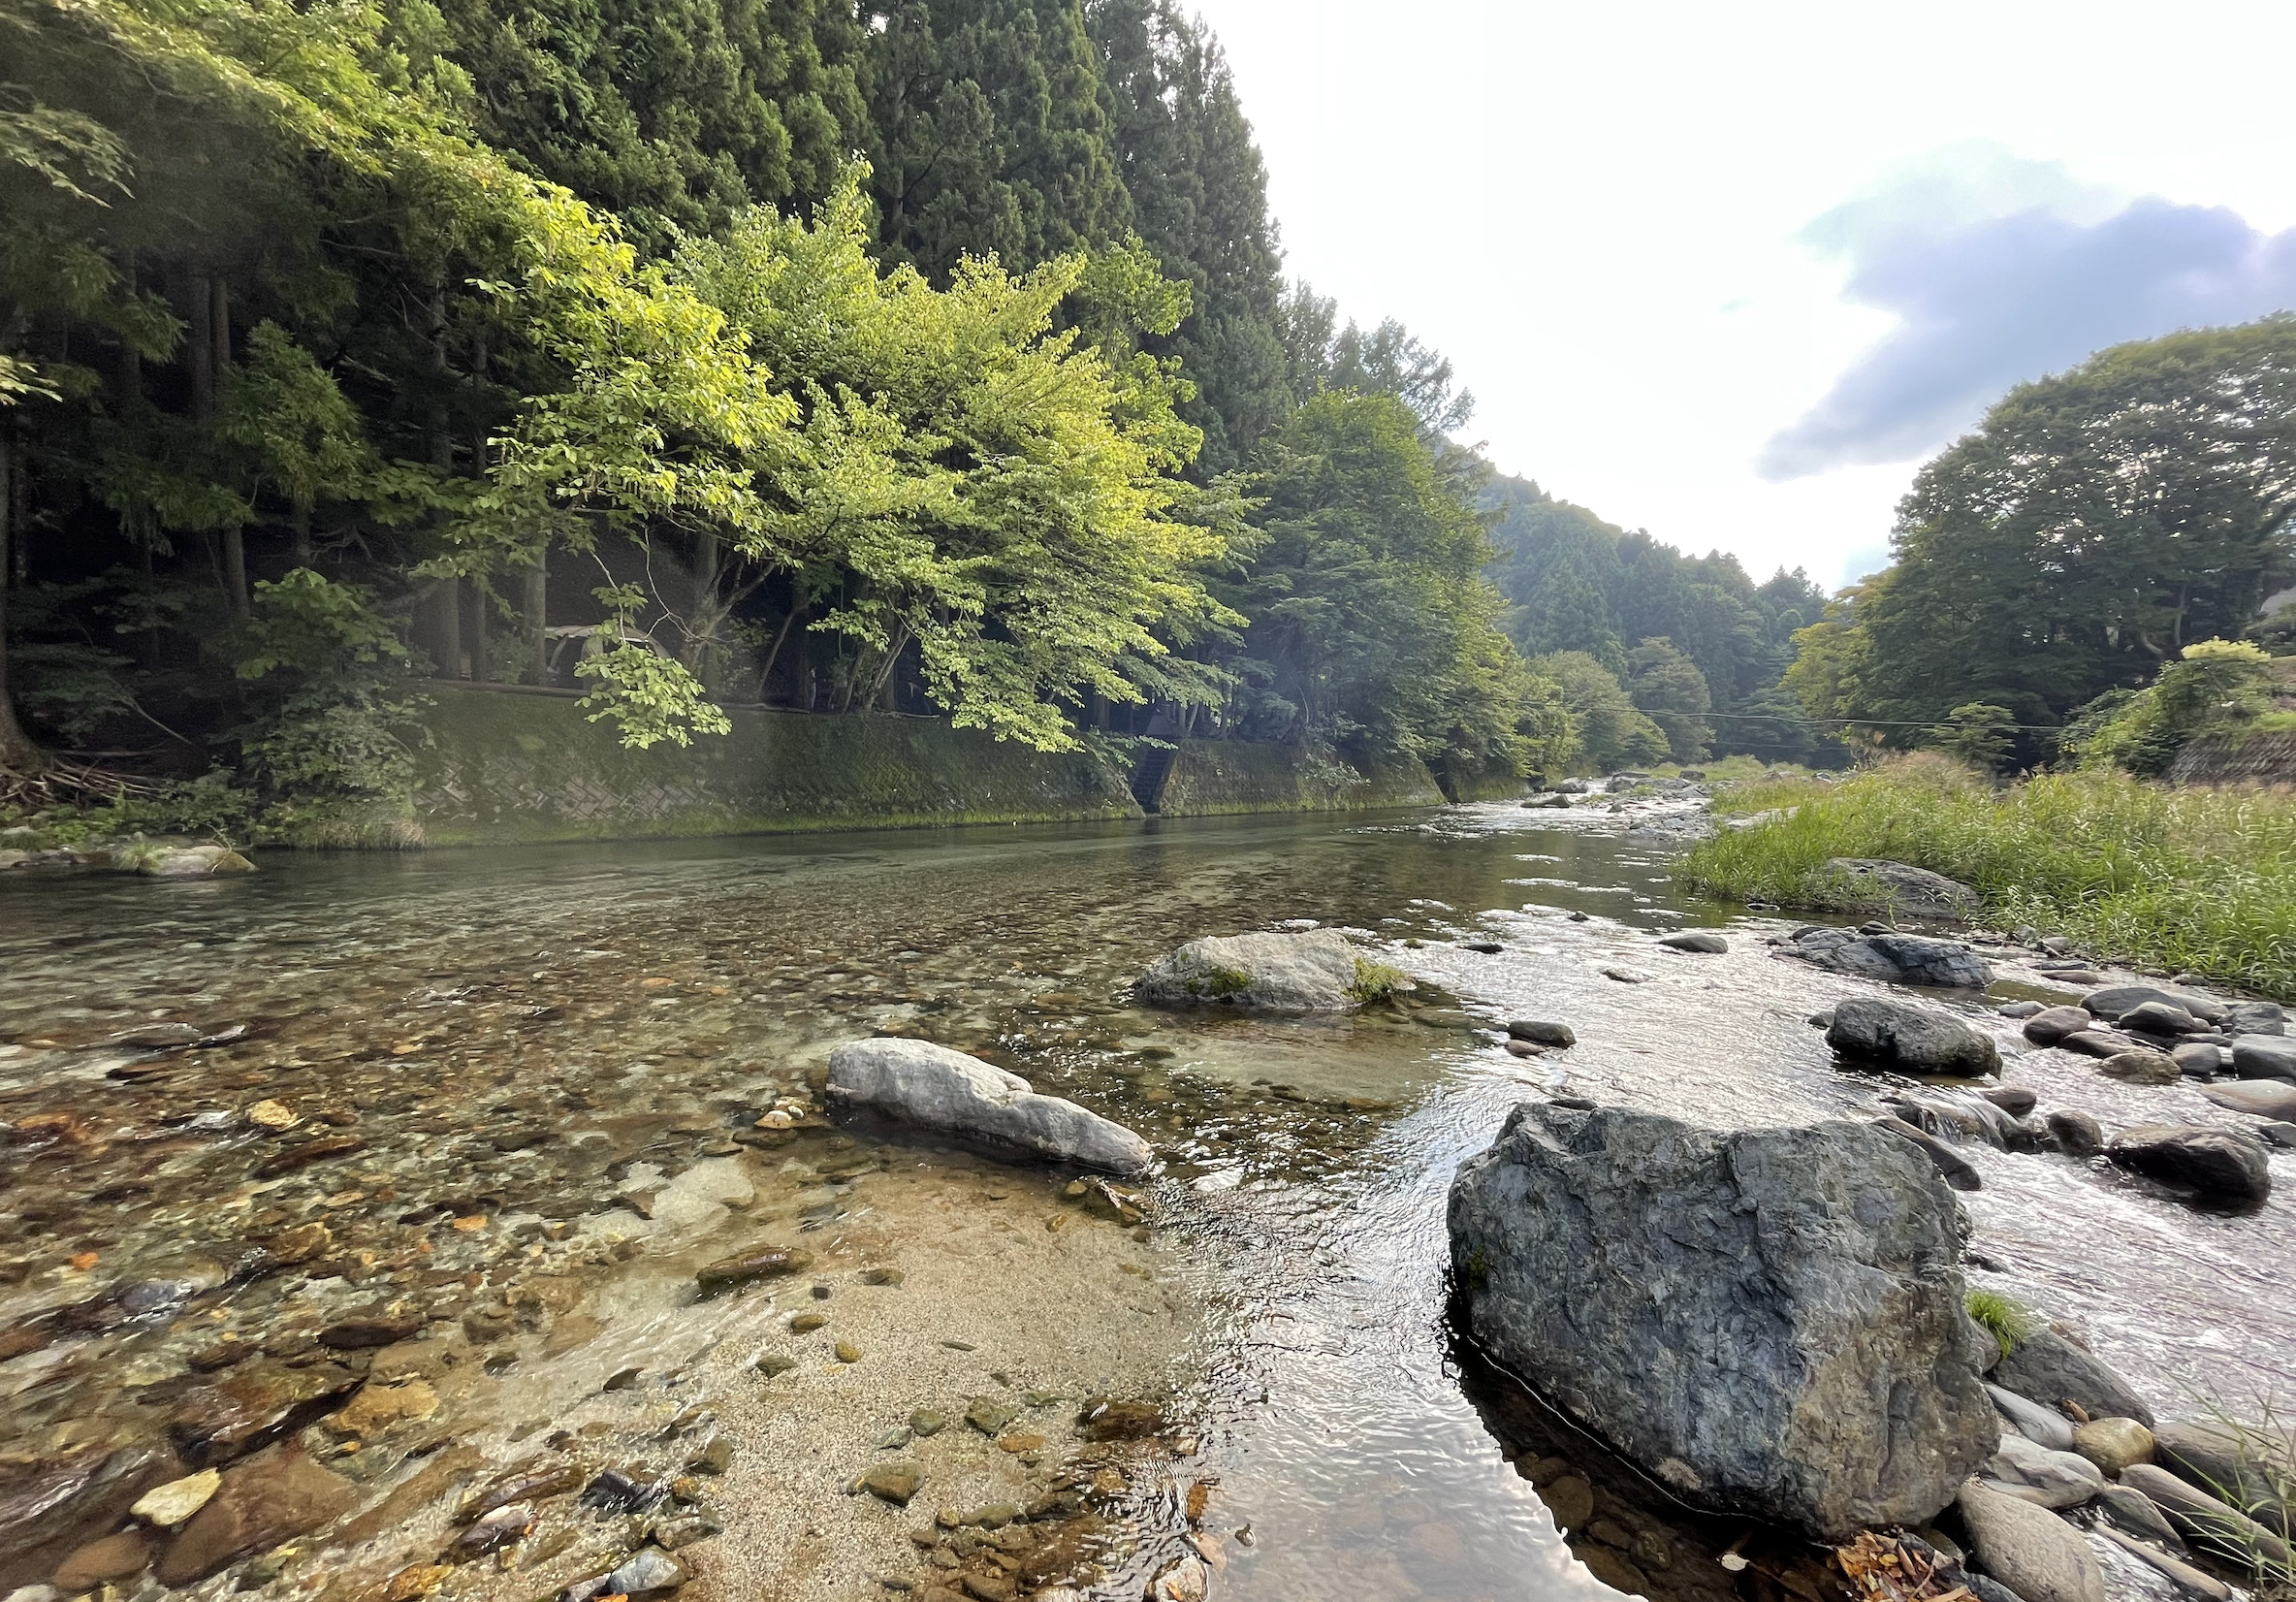 ウッズマンキャンプ場は道志川で川遊びや釣りが楽しめる